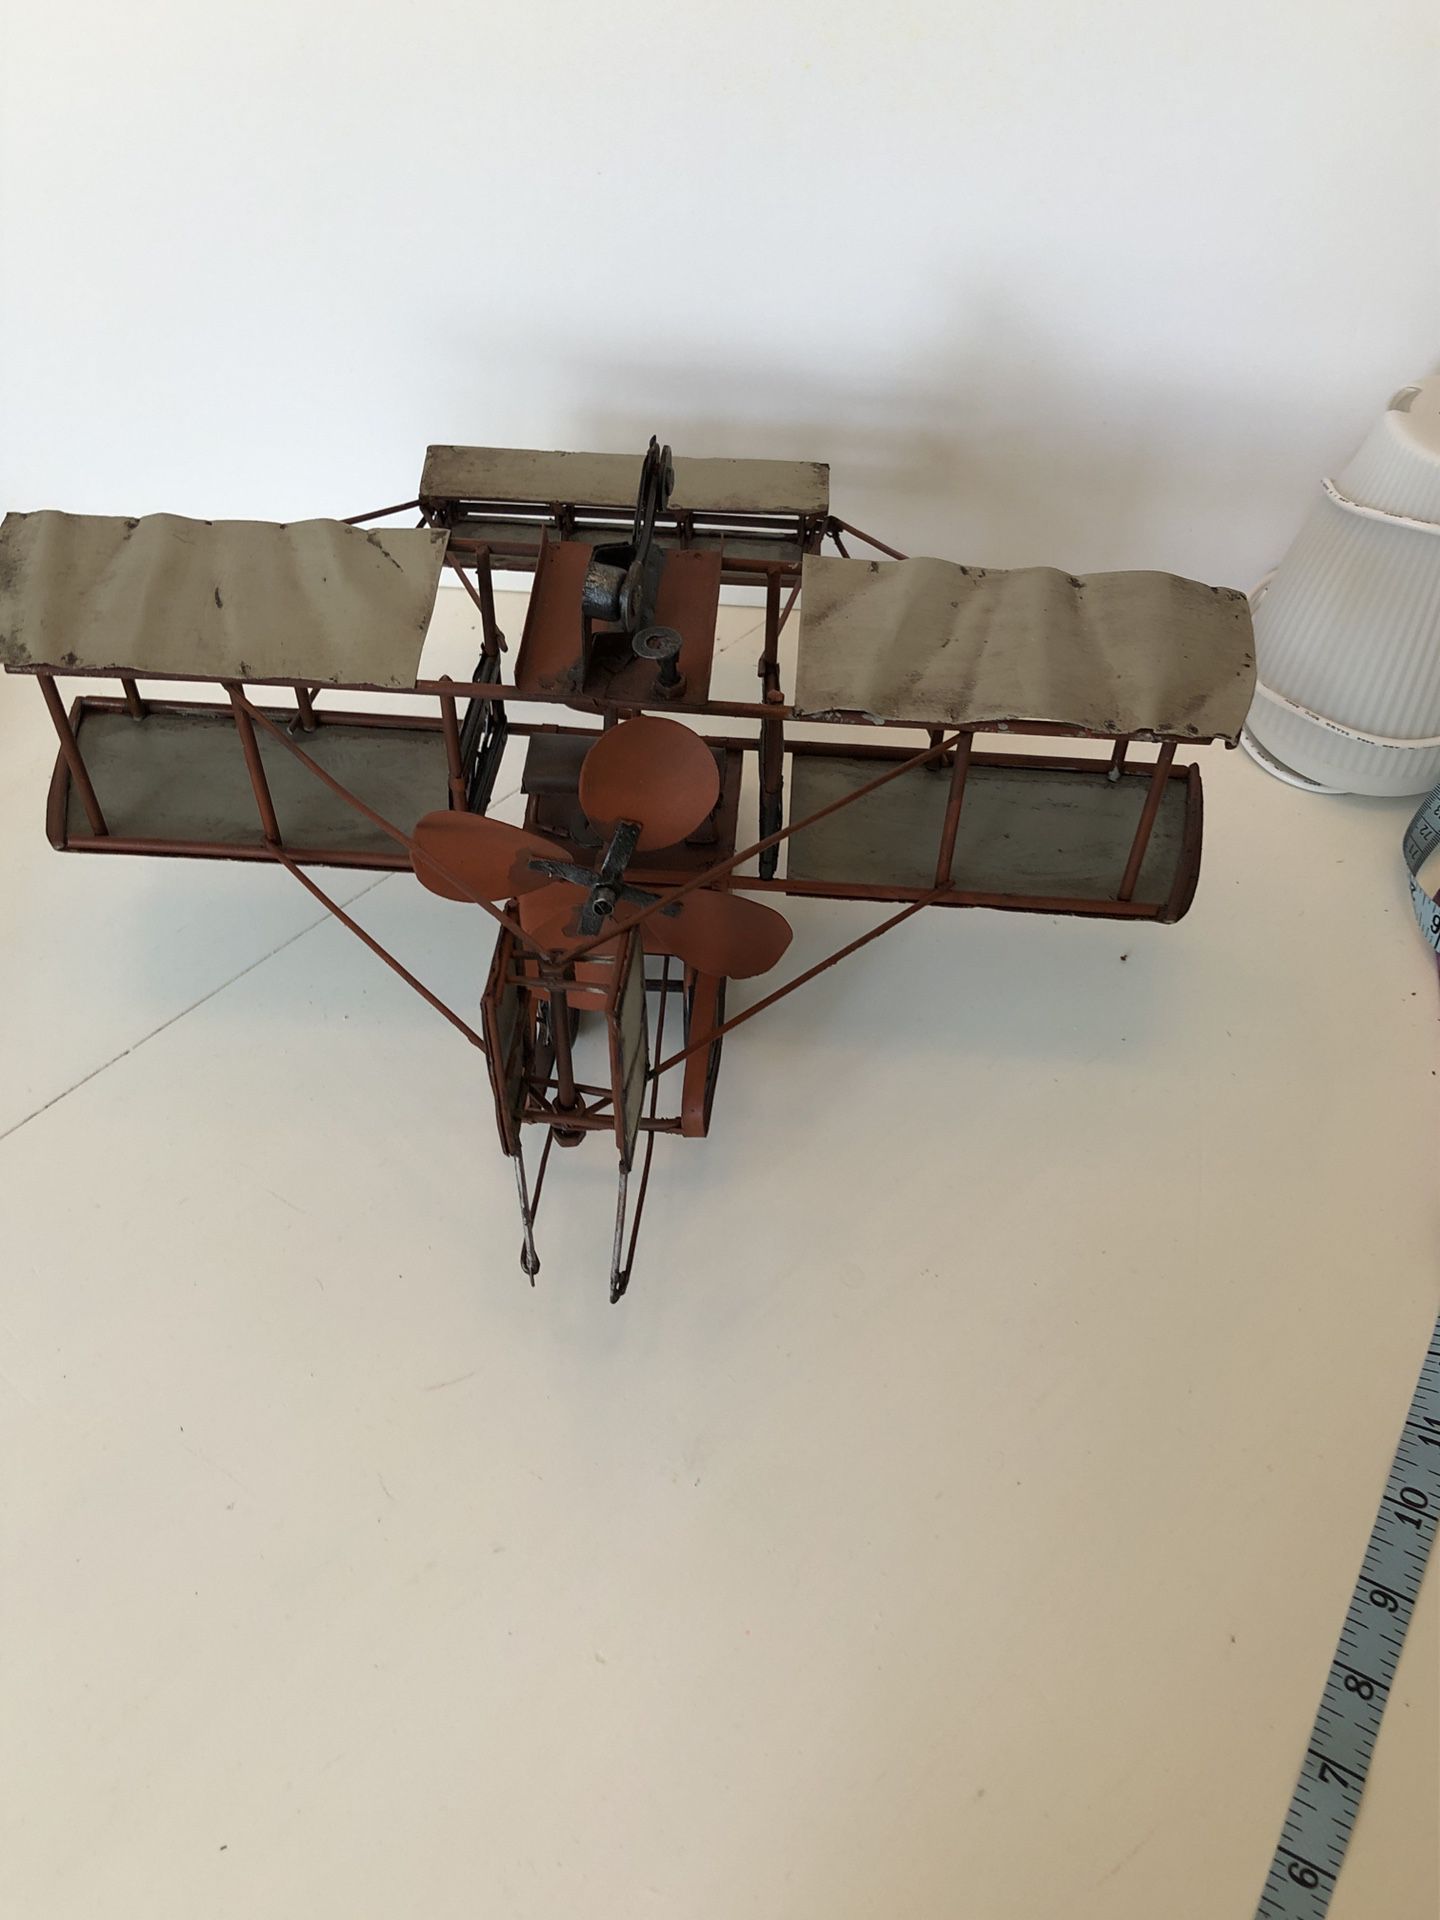 Aircraft desktop model vintage